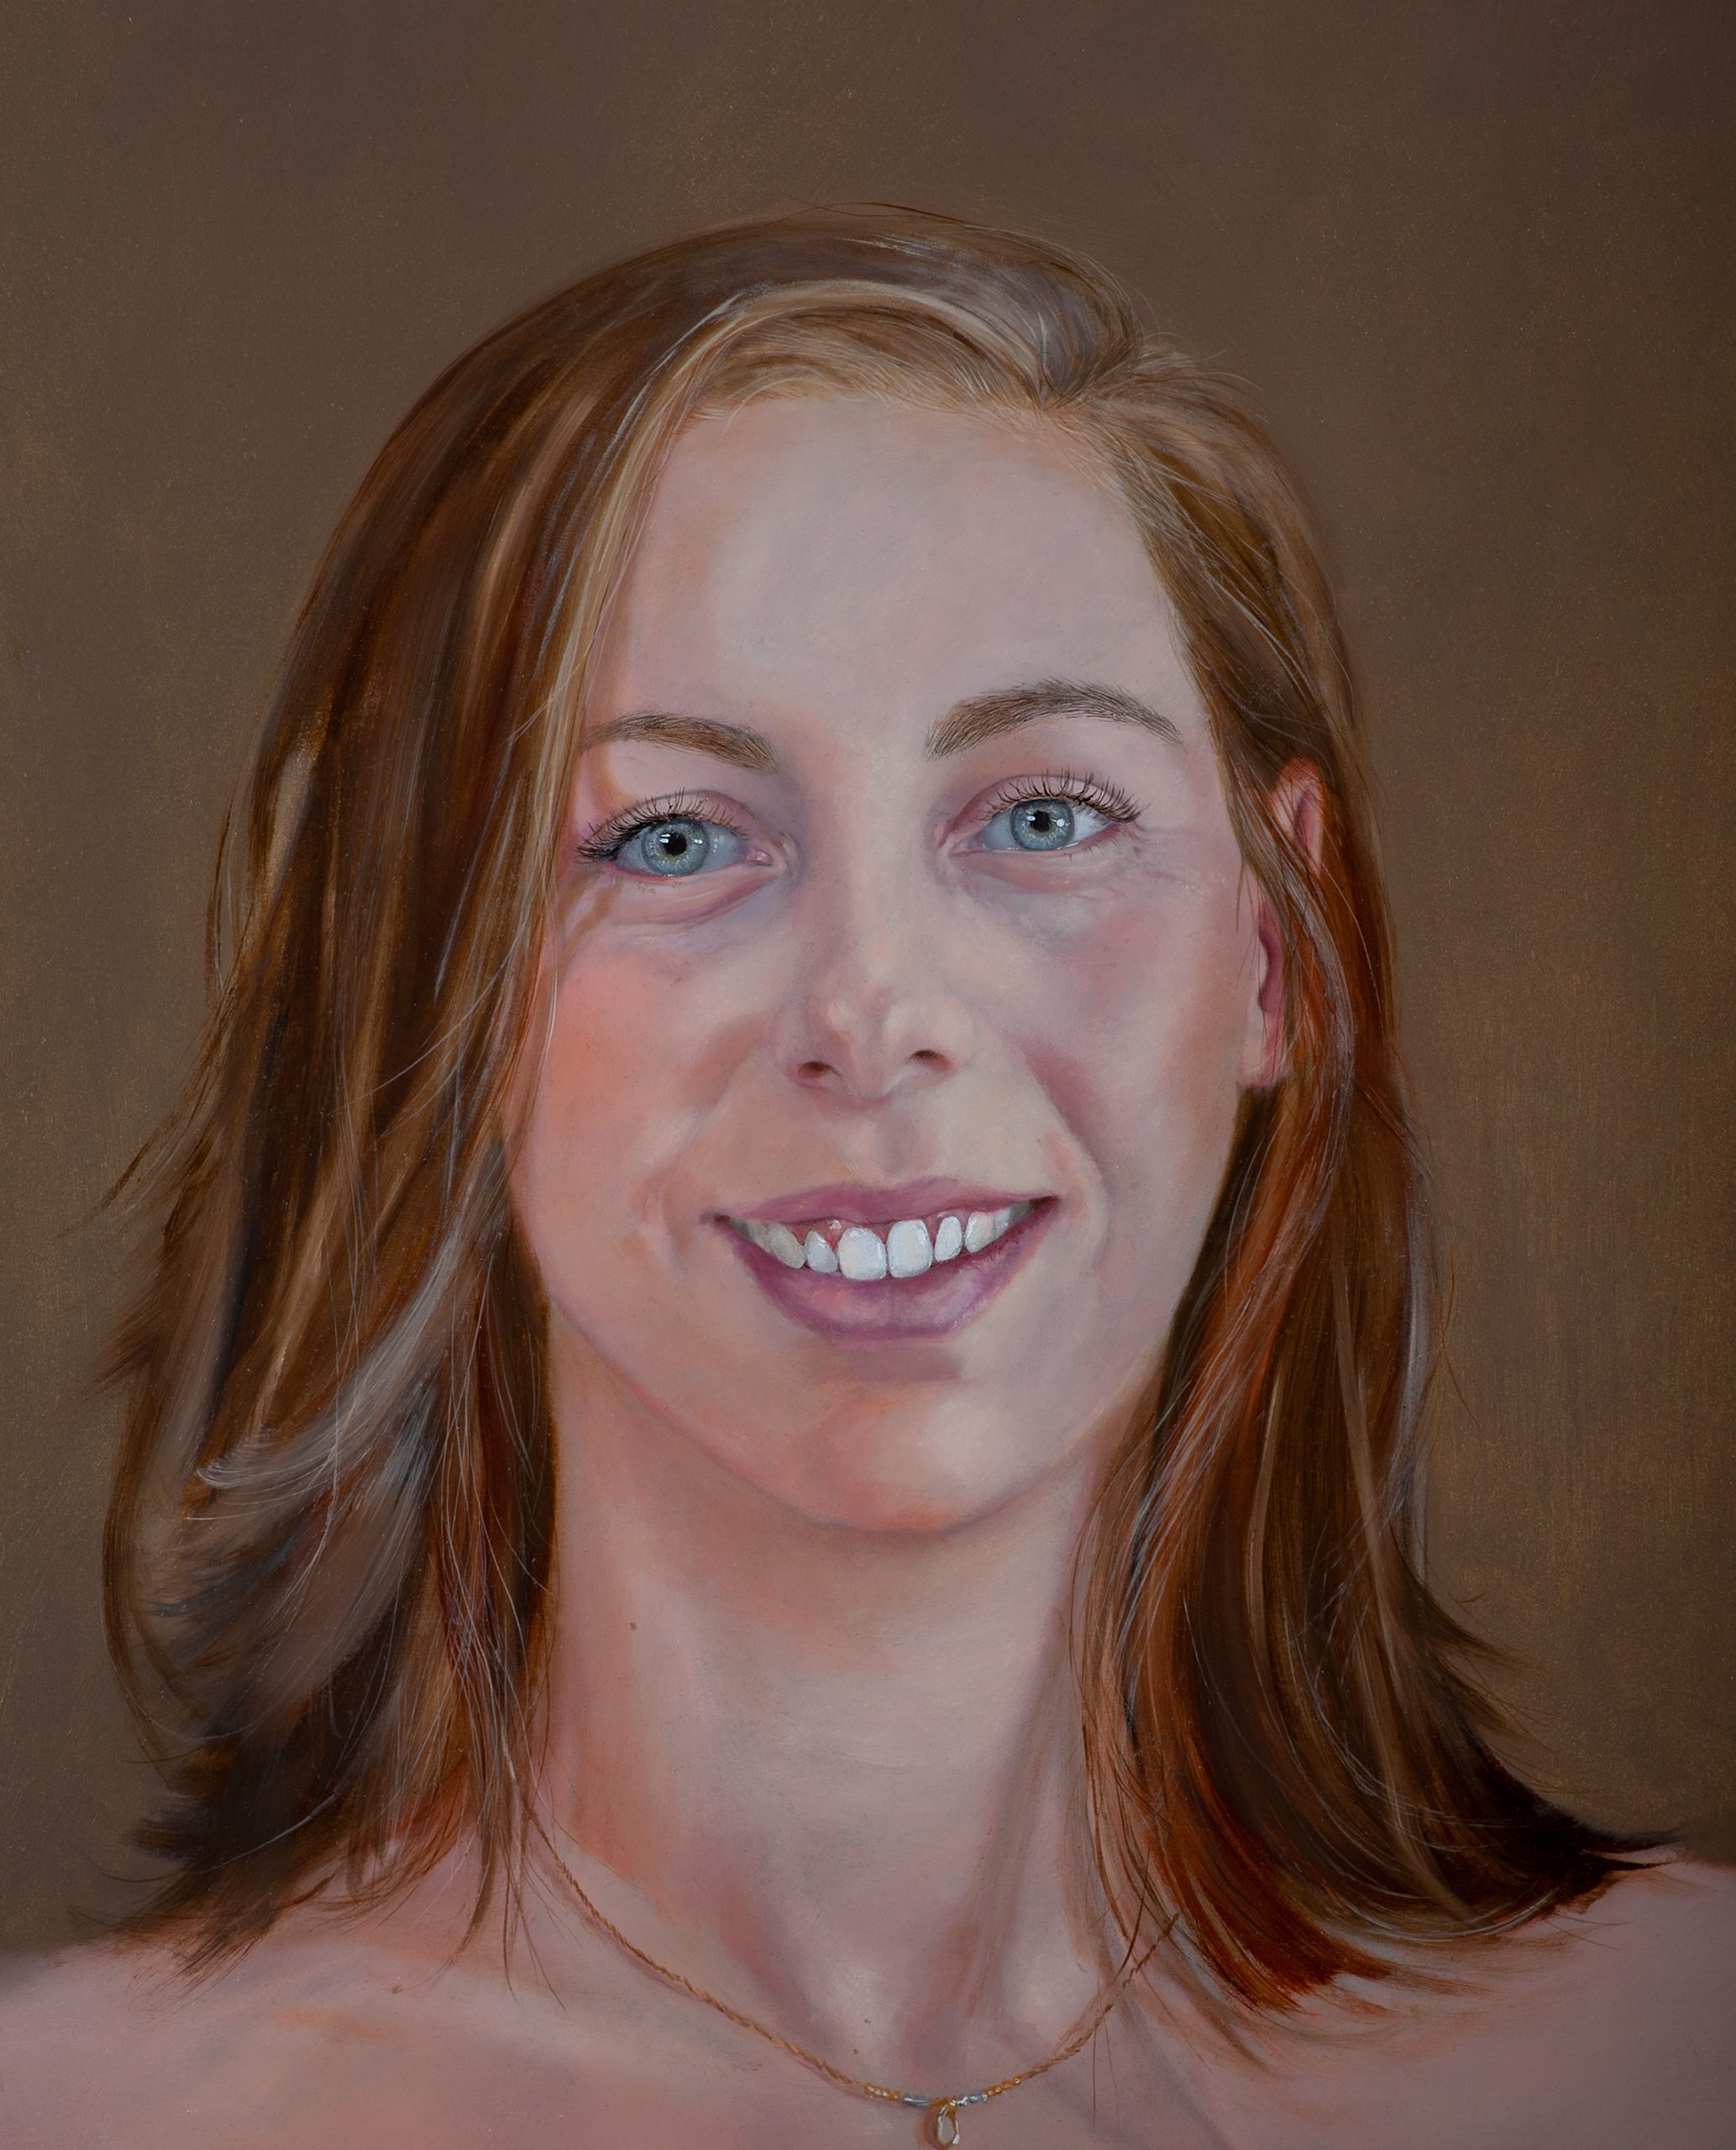 Een olieverfportret op een paneel van 40 x 50 cm, in opdracht geschilderd, toont een jonge vrouw met lang, donkerblond haar genaamd Denise tegen een bruine achtergrond. Dit kunstwerk is in 2020 geschilderd door portretschilder Anneke Ensing.